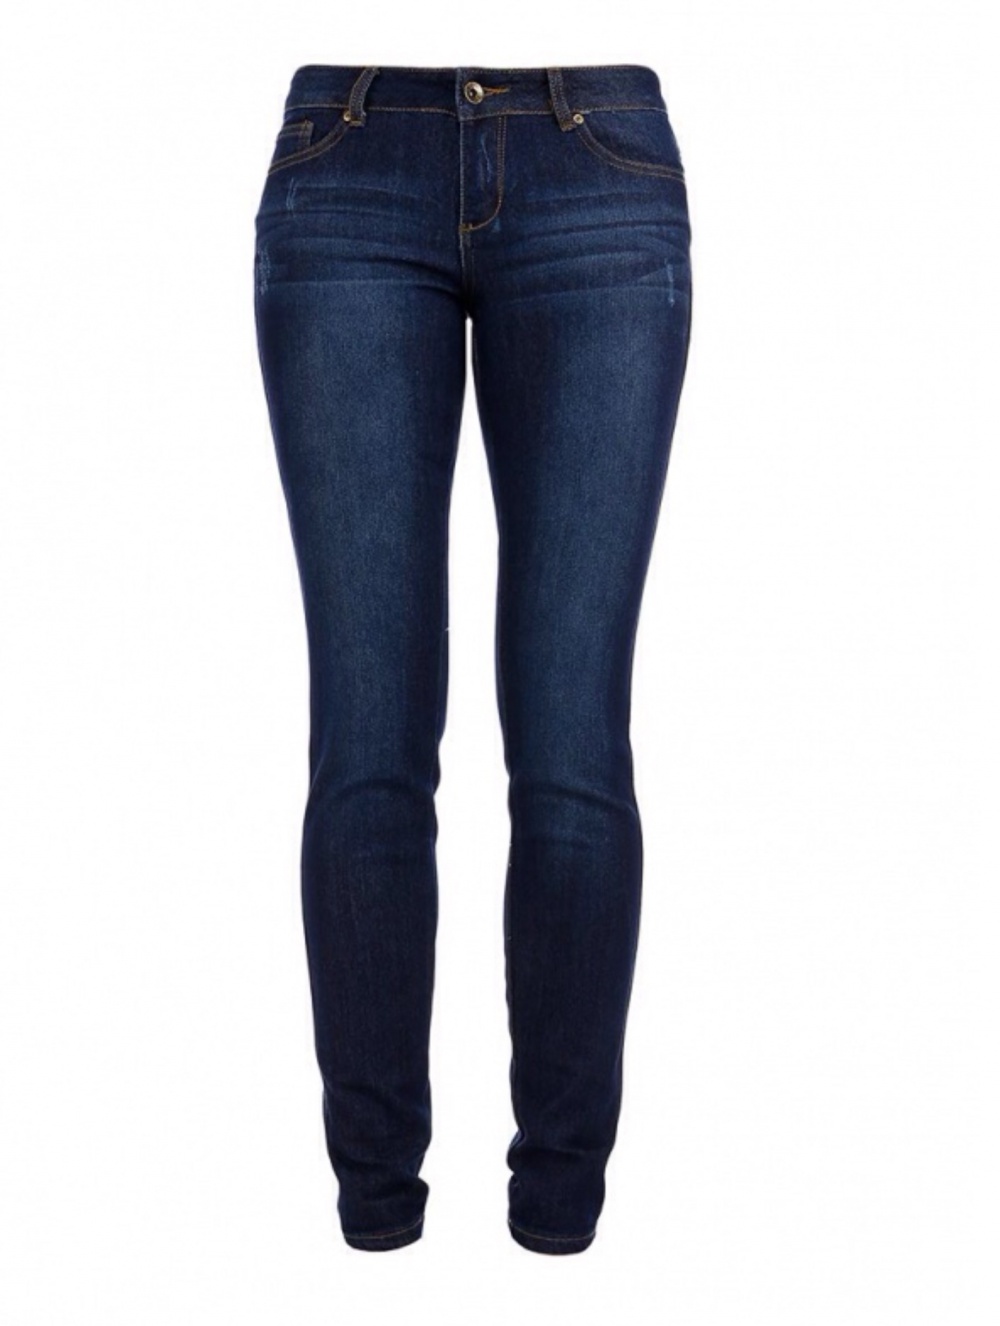 Женские джинсы темно-синего цвета, Slim Fit, низкая талия, на 28 (44 рус), Incity